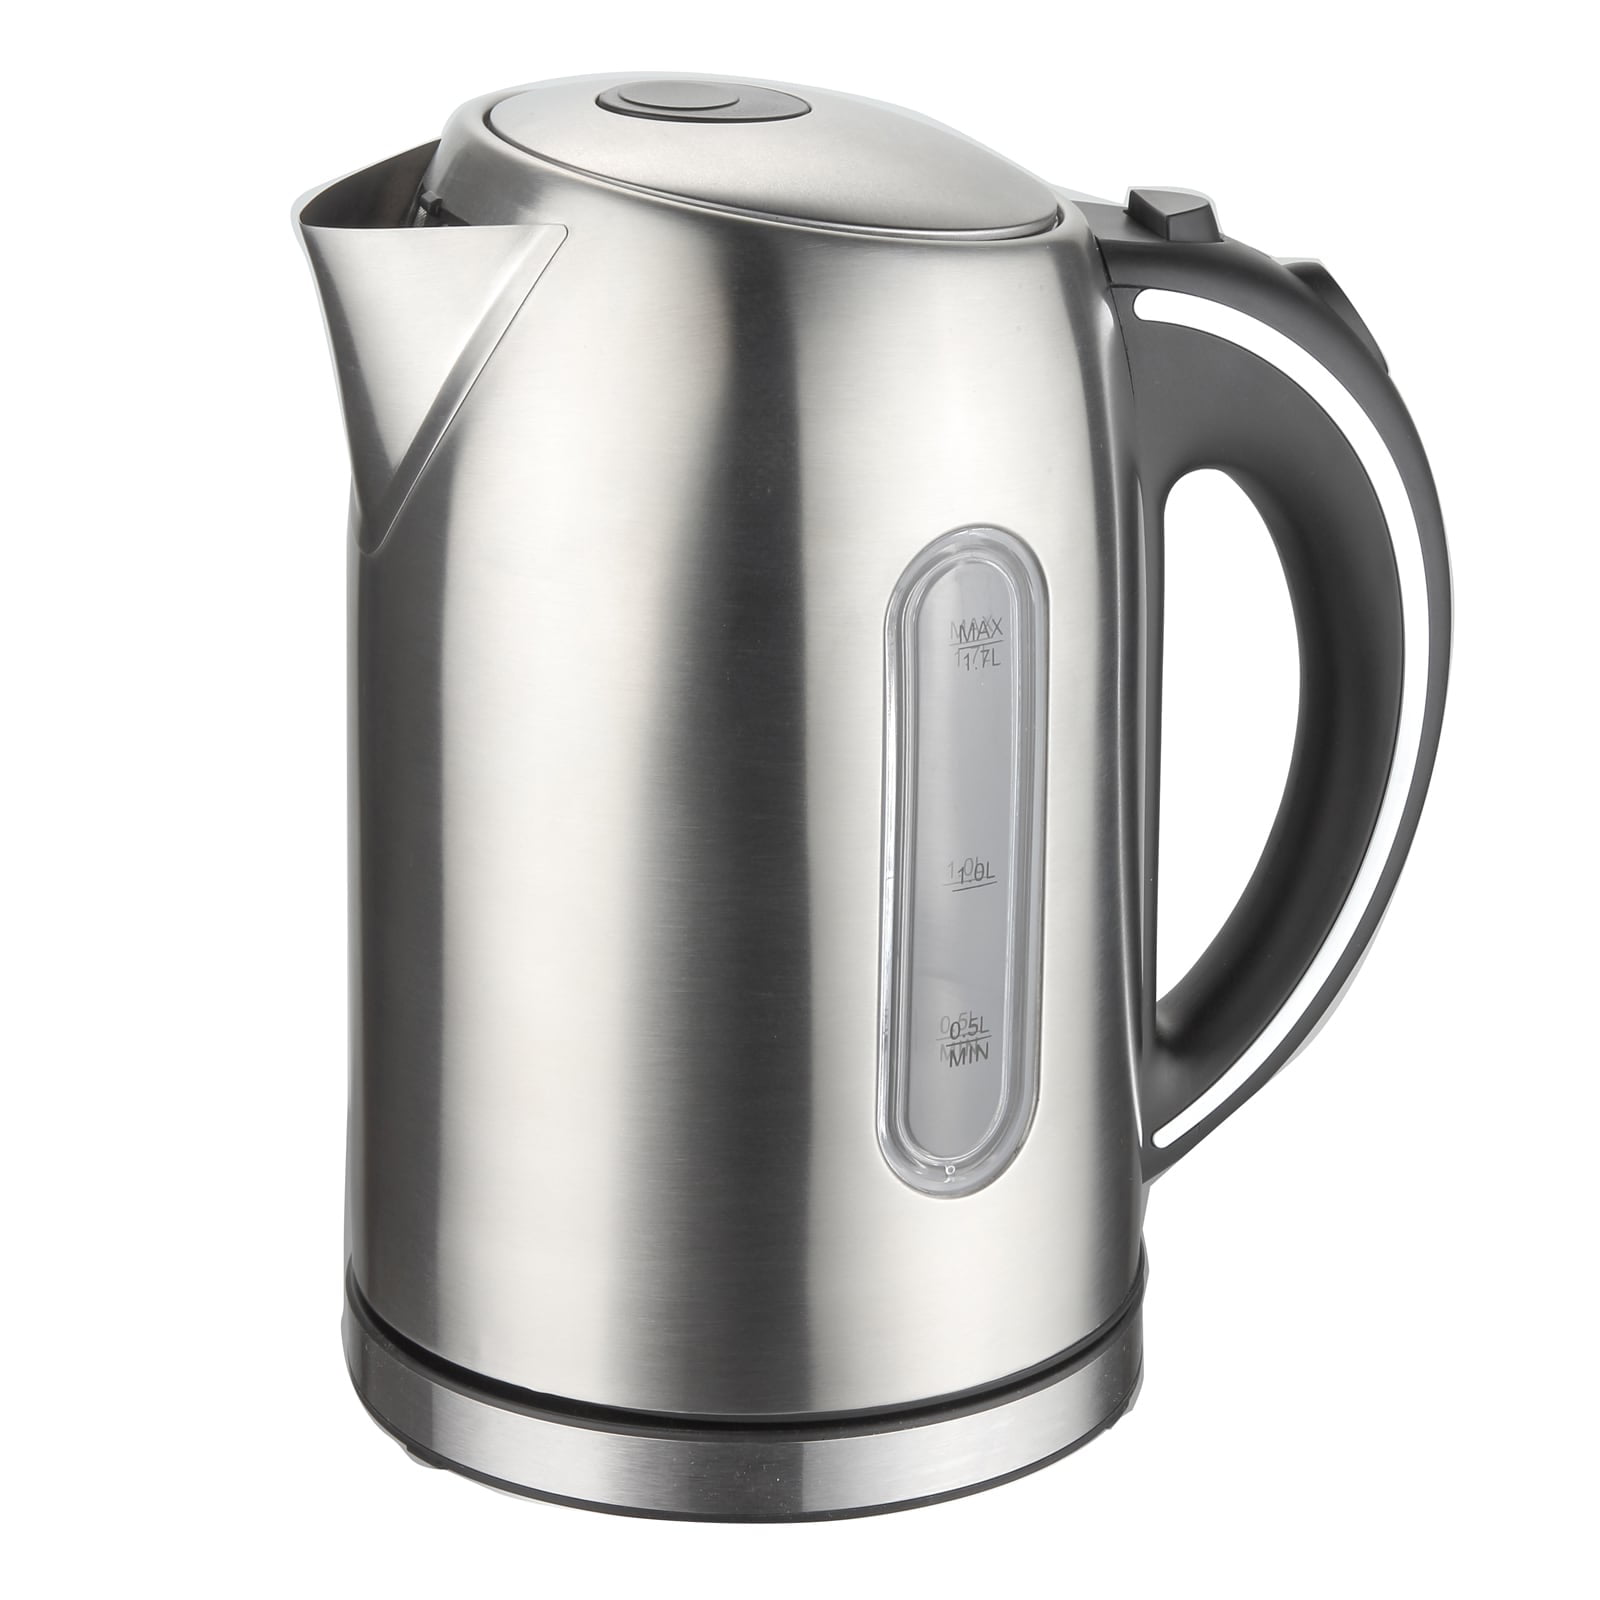 electric tea kettle walmart